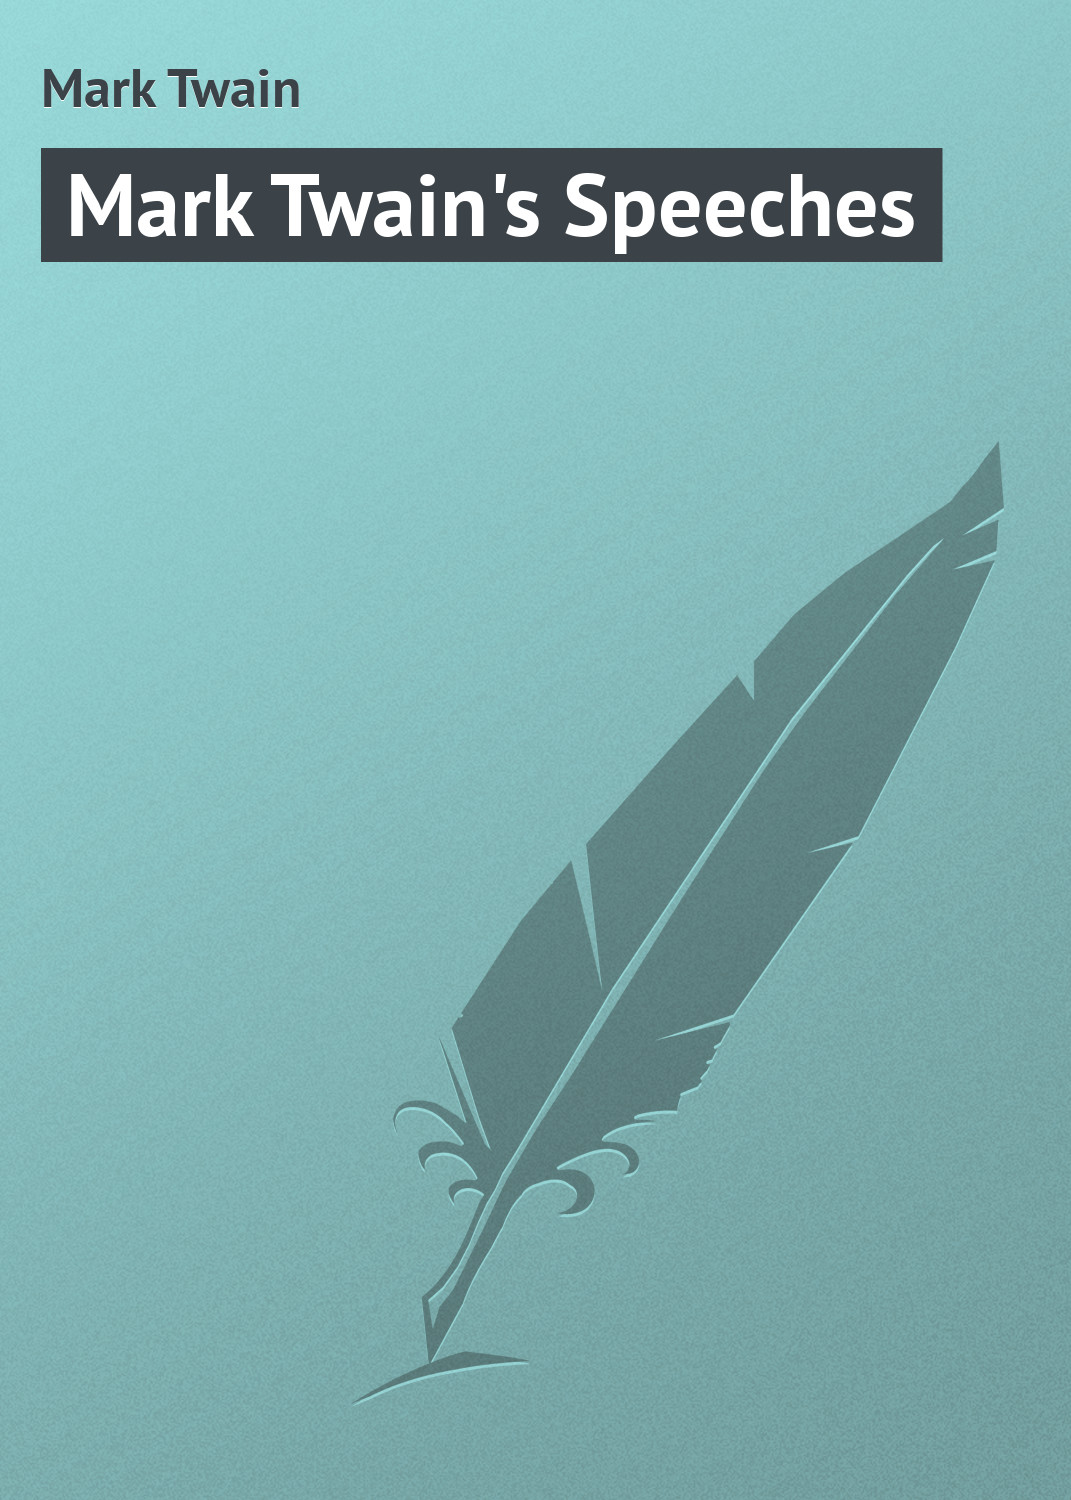 Книга Mark Twain's Speeches из серии , созданная Mark Twain, может относится к жанру Зарубежная классика. Стоимость электронной книги Mark Twain's Speeches с идентификатором 9366888 составляет 29.95 руб.